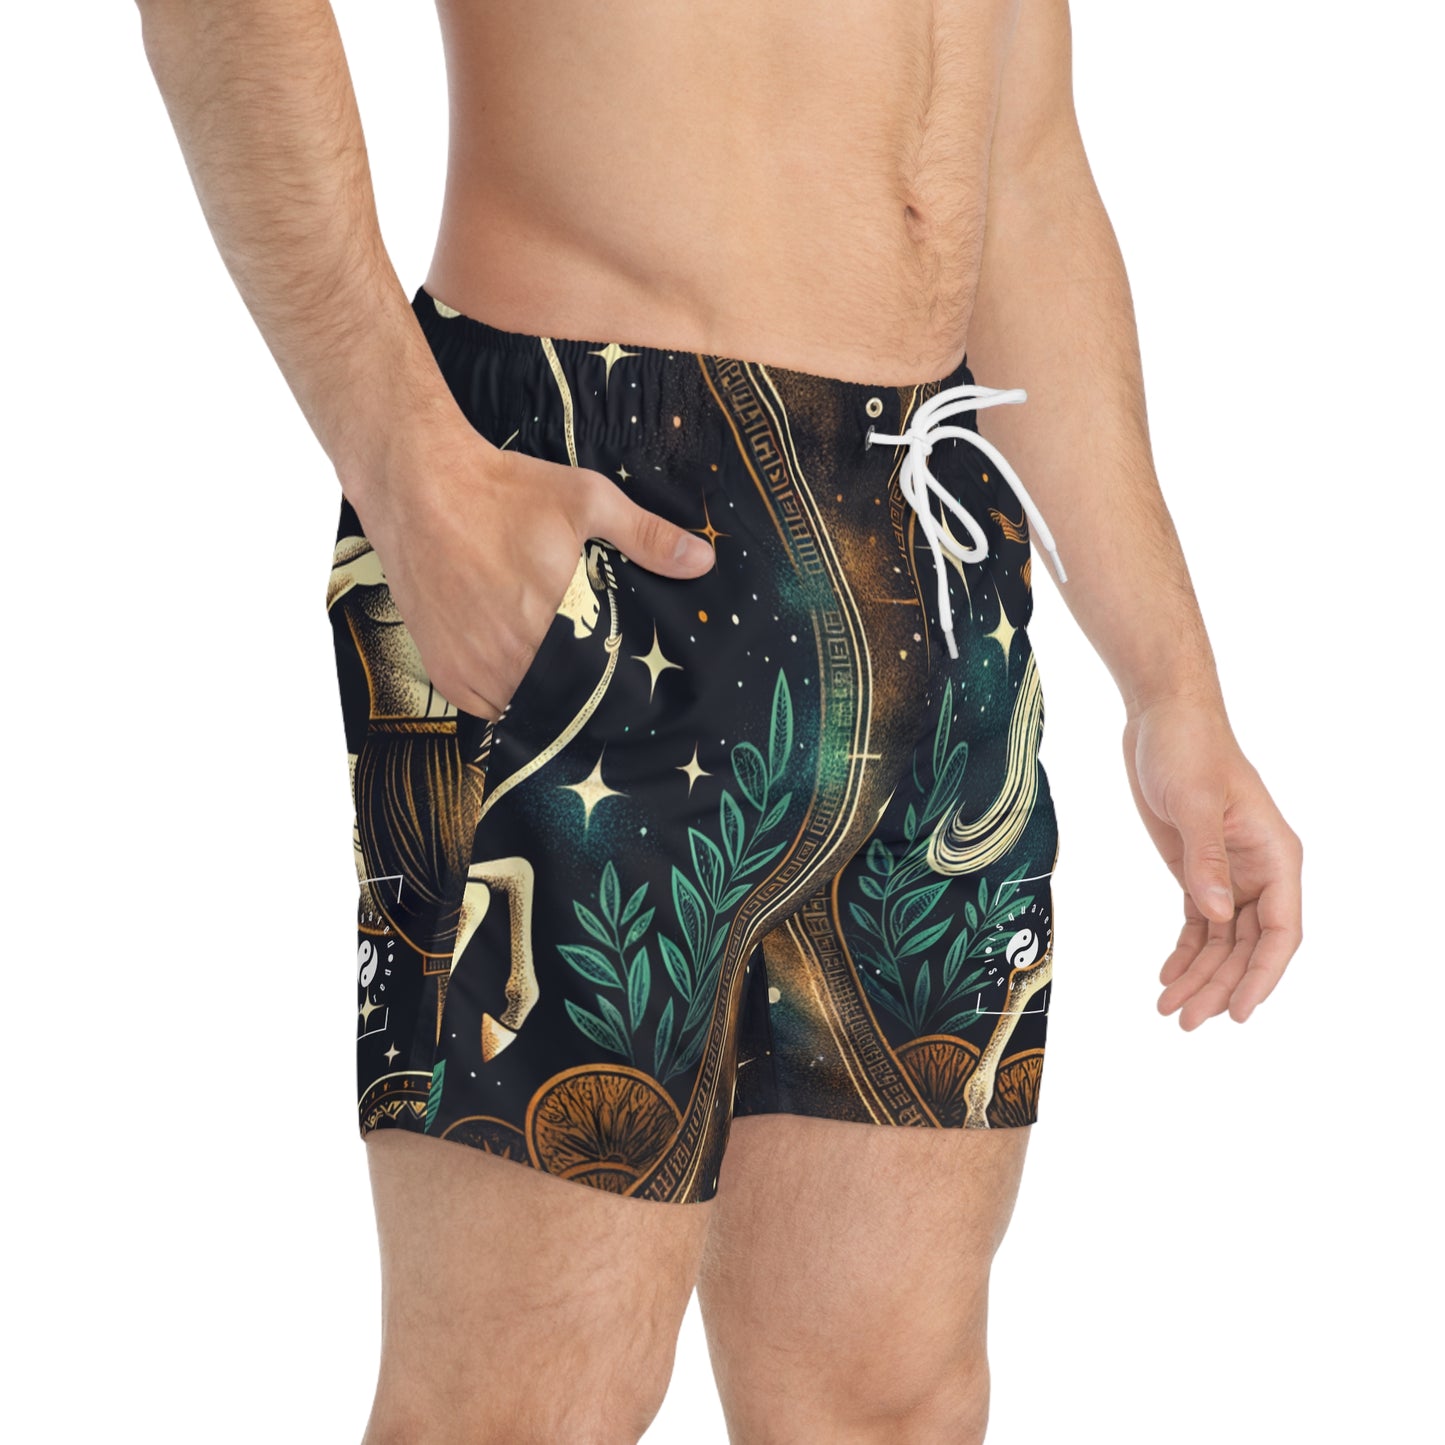 Sagittarius Emblem - Swim Trunks for Men